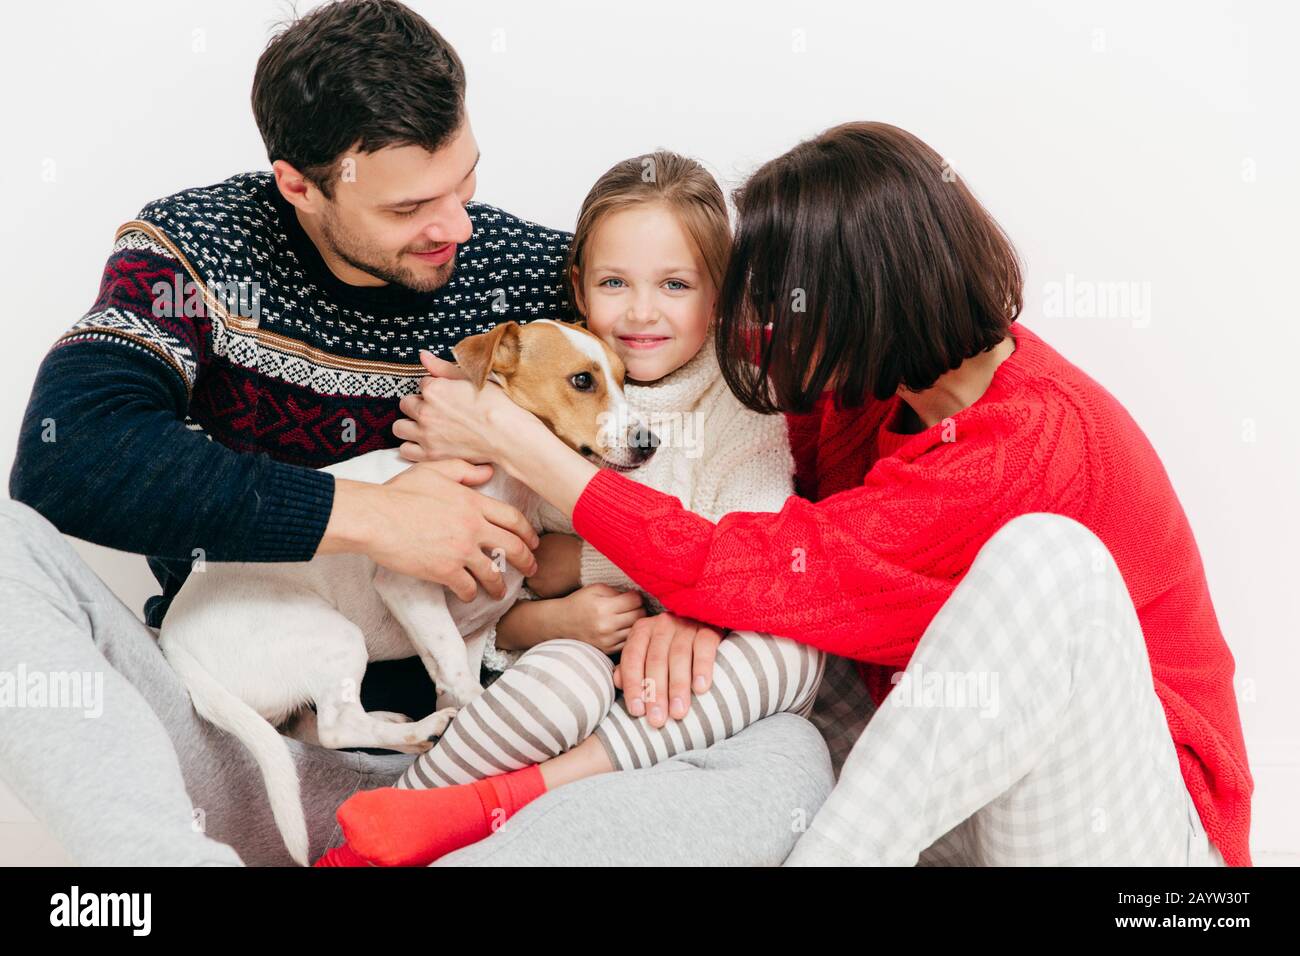 Trois membres de la famille ont acheté pedigree Jack Russell Terrier, chien heureux ont des expressions, isolé sur fond blanc. Heureux charmante famille profiter ensemble Banque D'Images